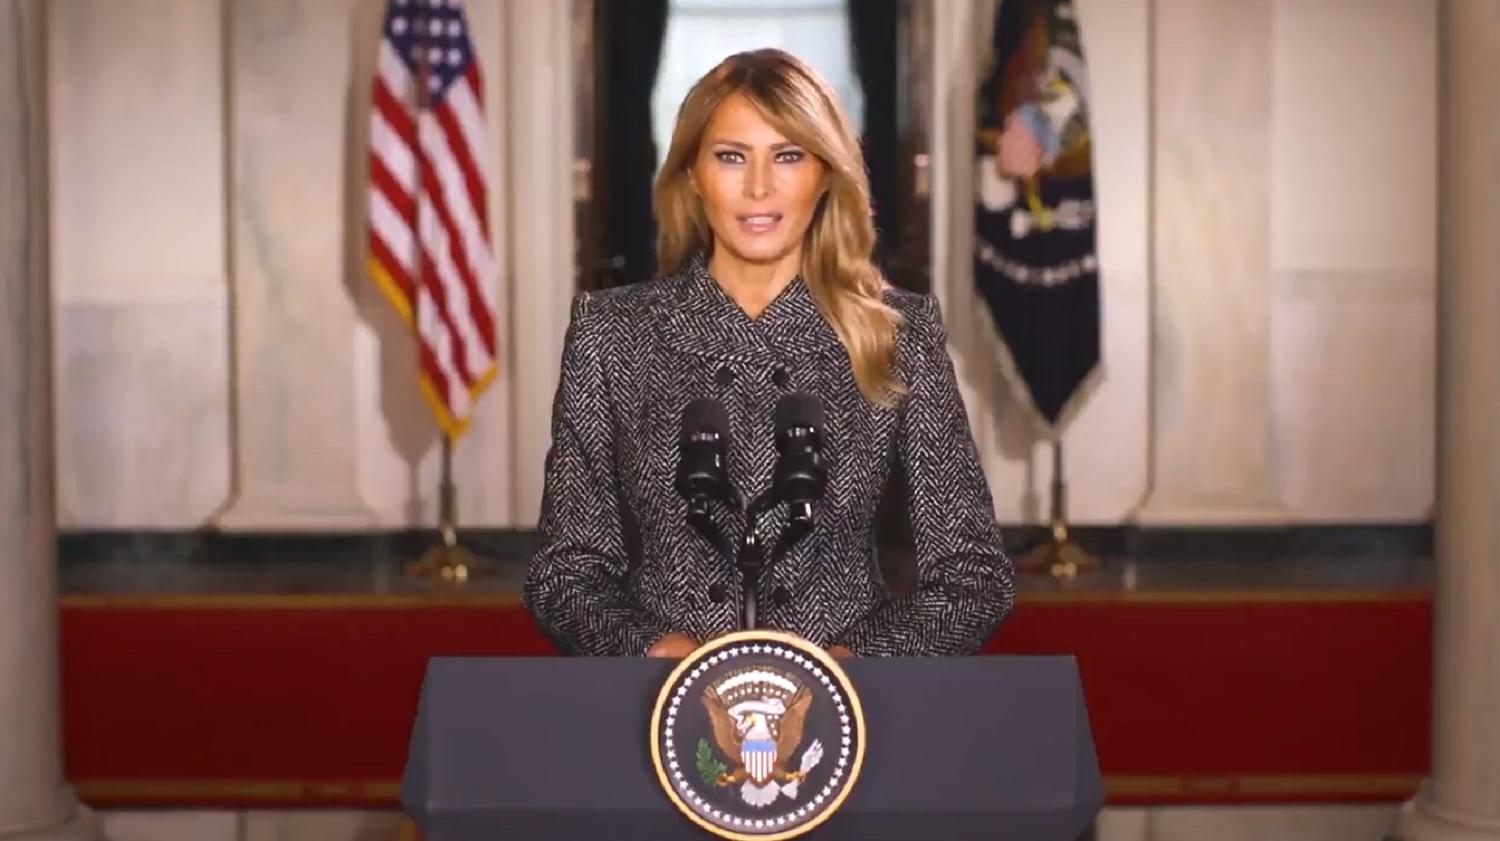 La primera dama de Estados Unidos, Melania Trump, en su discurso de despedida. Fuente: Casa Blanca.